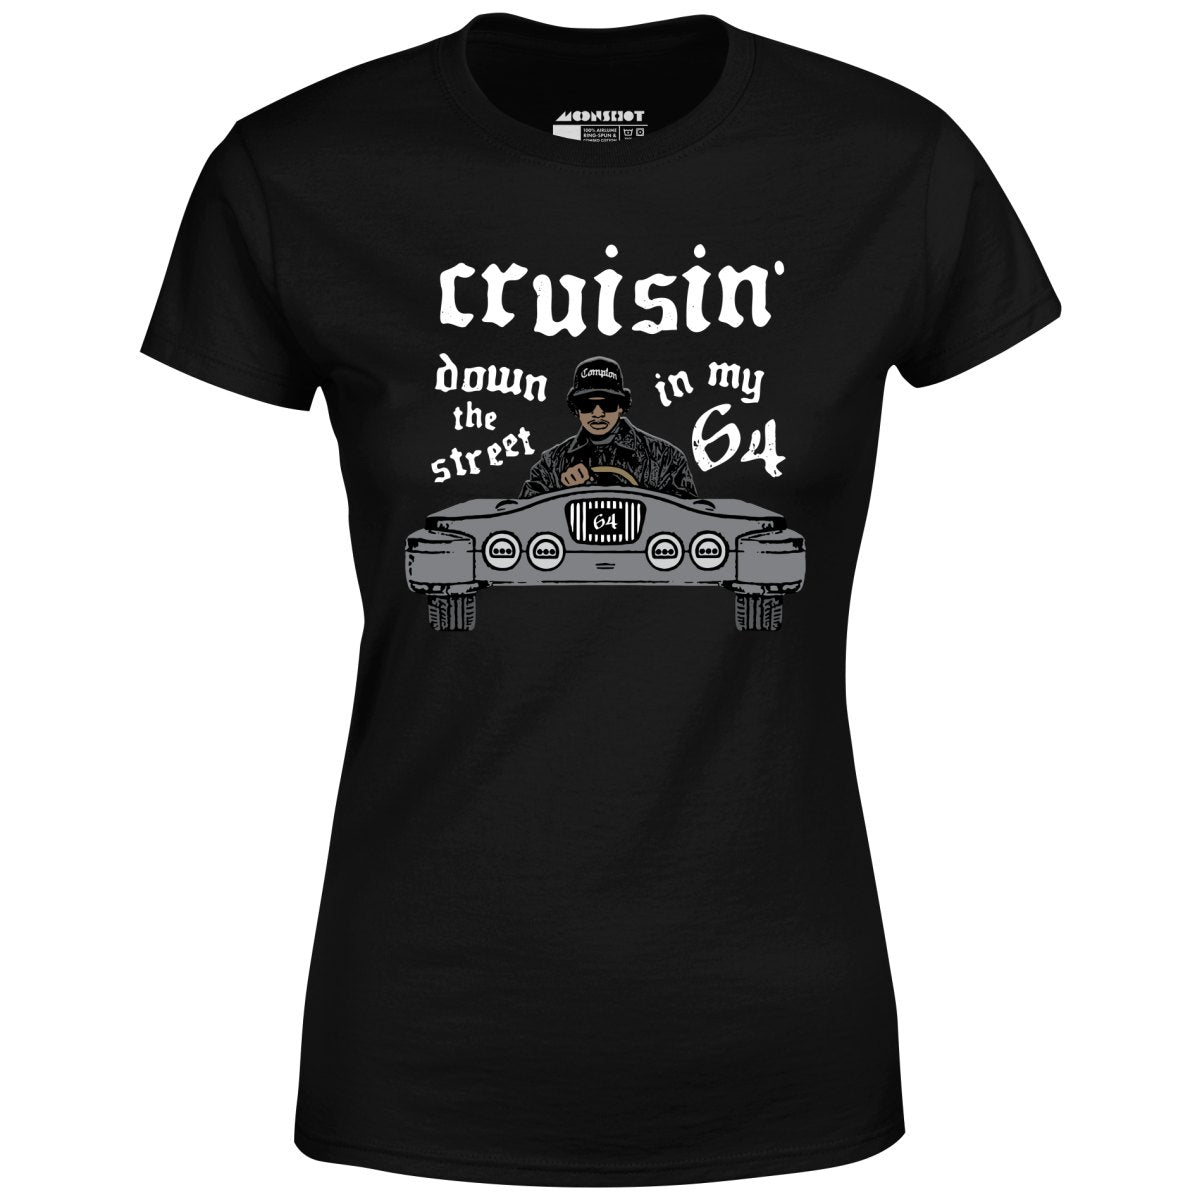 Cruisin' Down the Street in My 64 - Women's T-Shirt